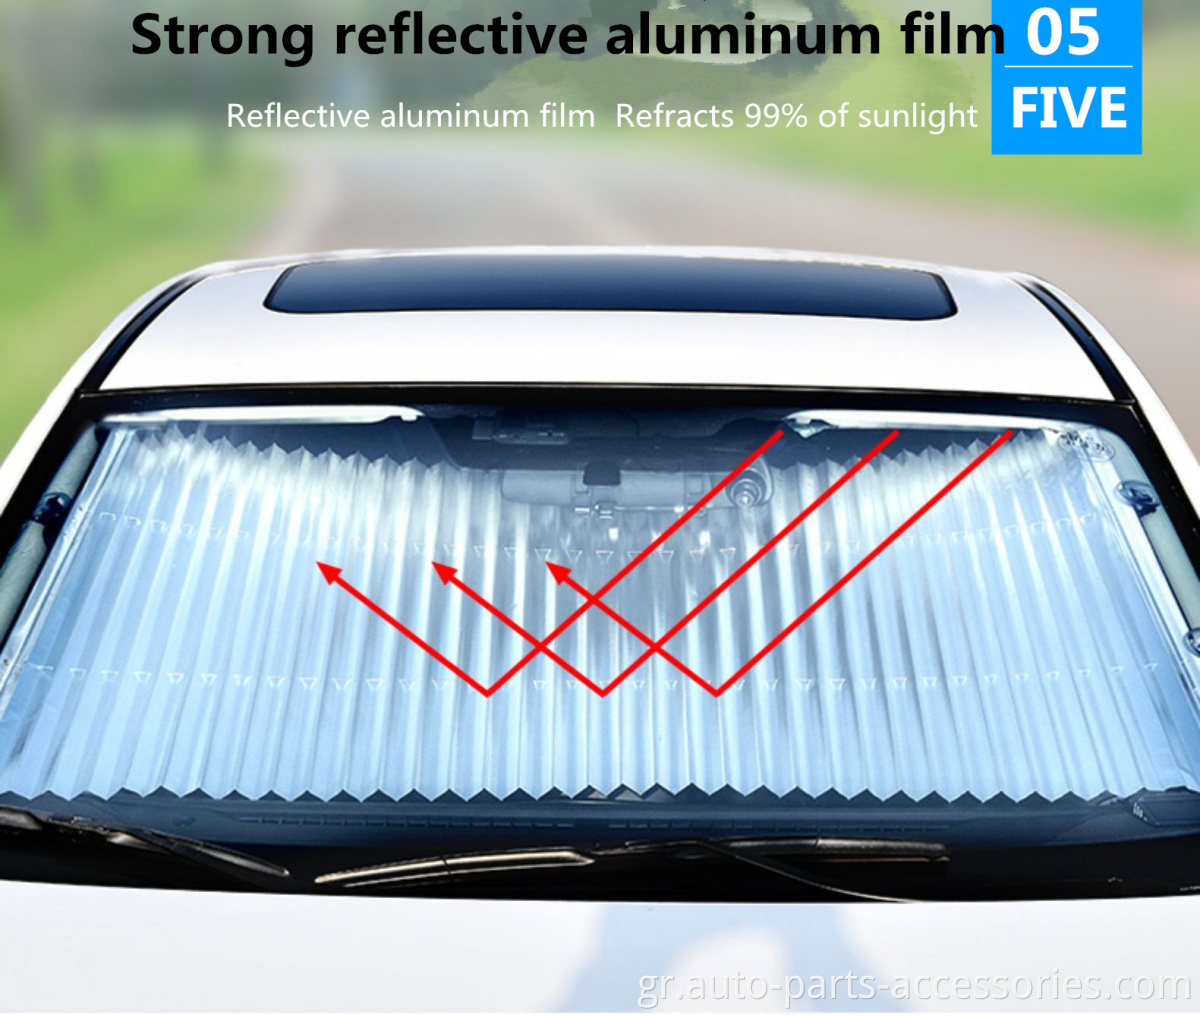 Μείωση του αυτοκινήτου μέσα στη θερμοκρασία καλοκαιρινή απόδειξη απόδειξη παρμπρίζ από σκιά ανασύφλου αλουμινίου